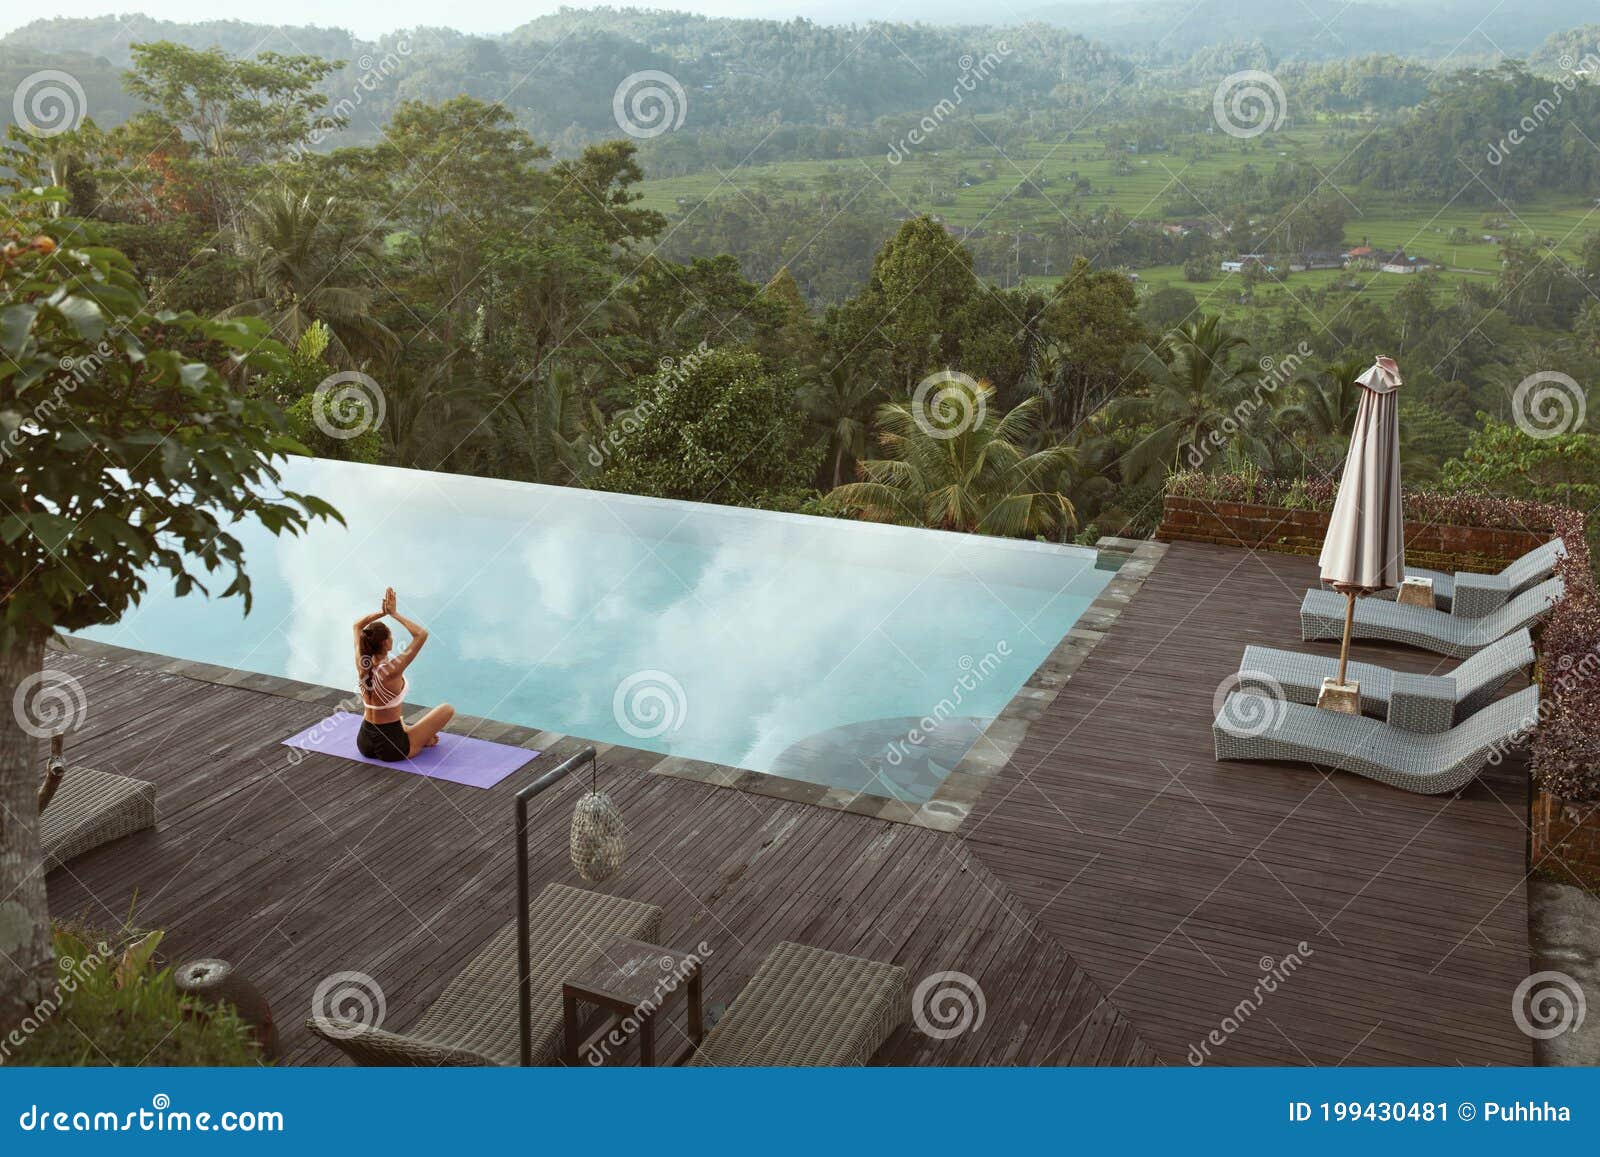 印度尼西亚巴厘岛，一个美女在泳池边练瑜伽 库存照片. 图片 包括有 浓度, 健身, 适应, 凝思, 健康 - 199430564